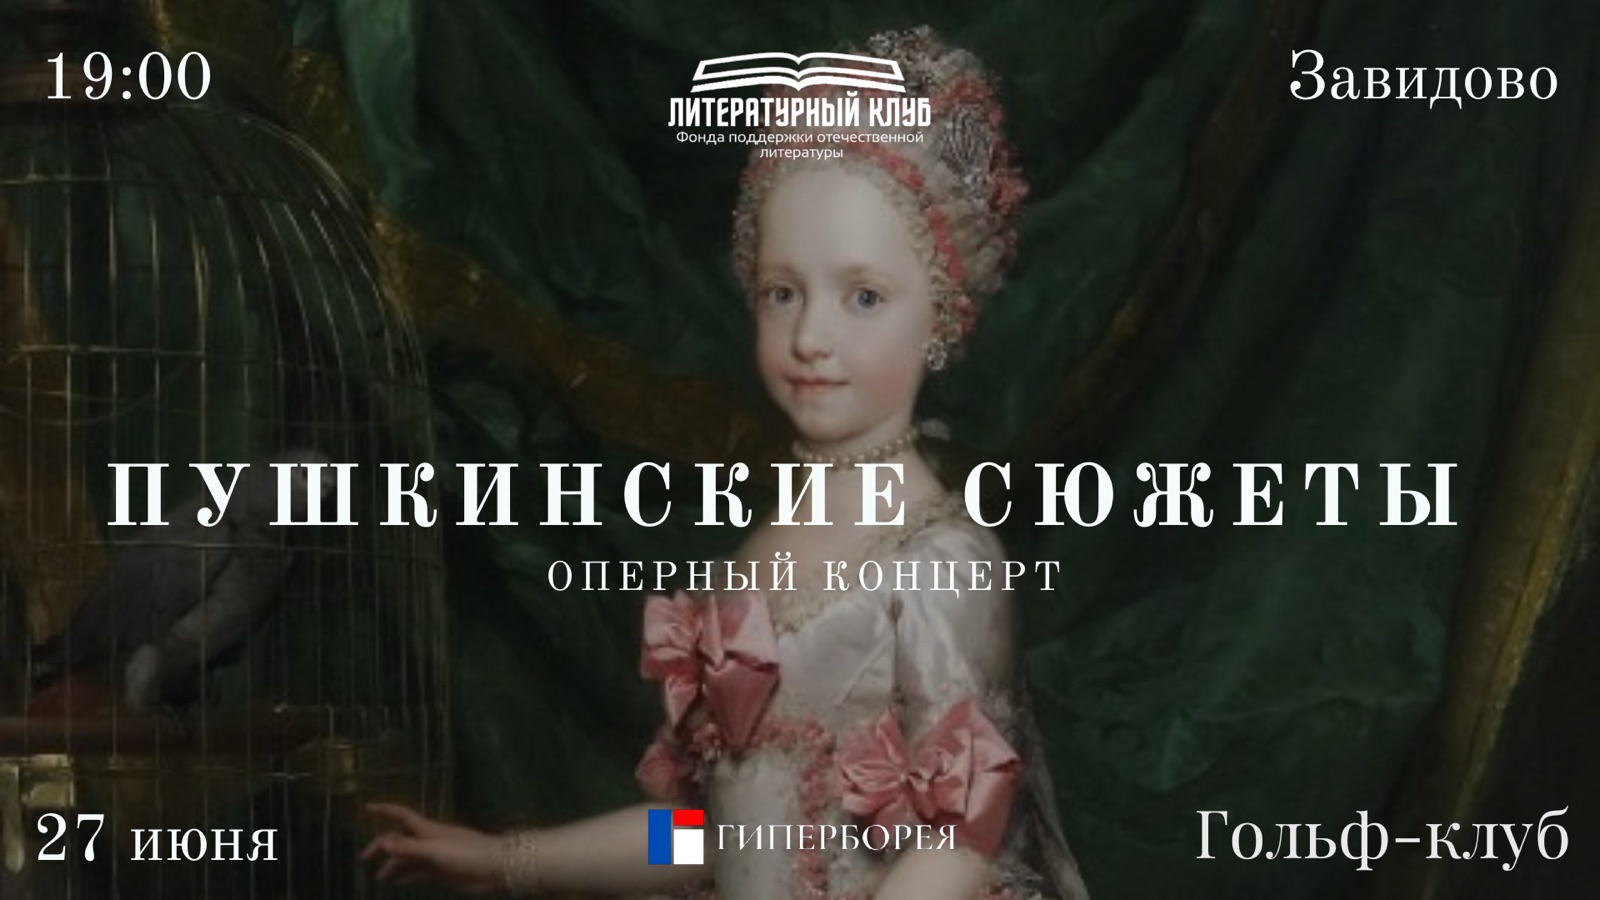 Благотворительный концерт в поддержку Пушкинской премии